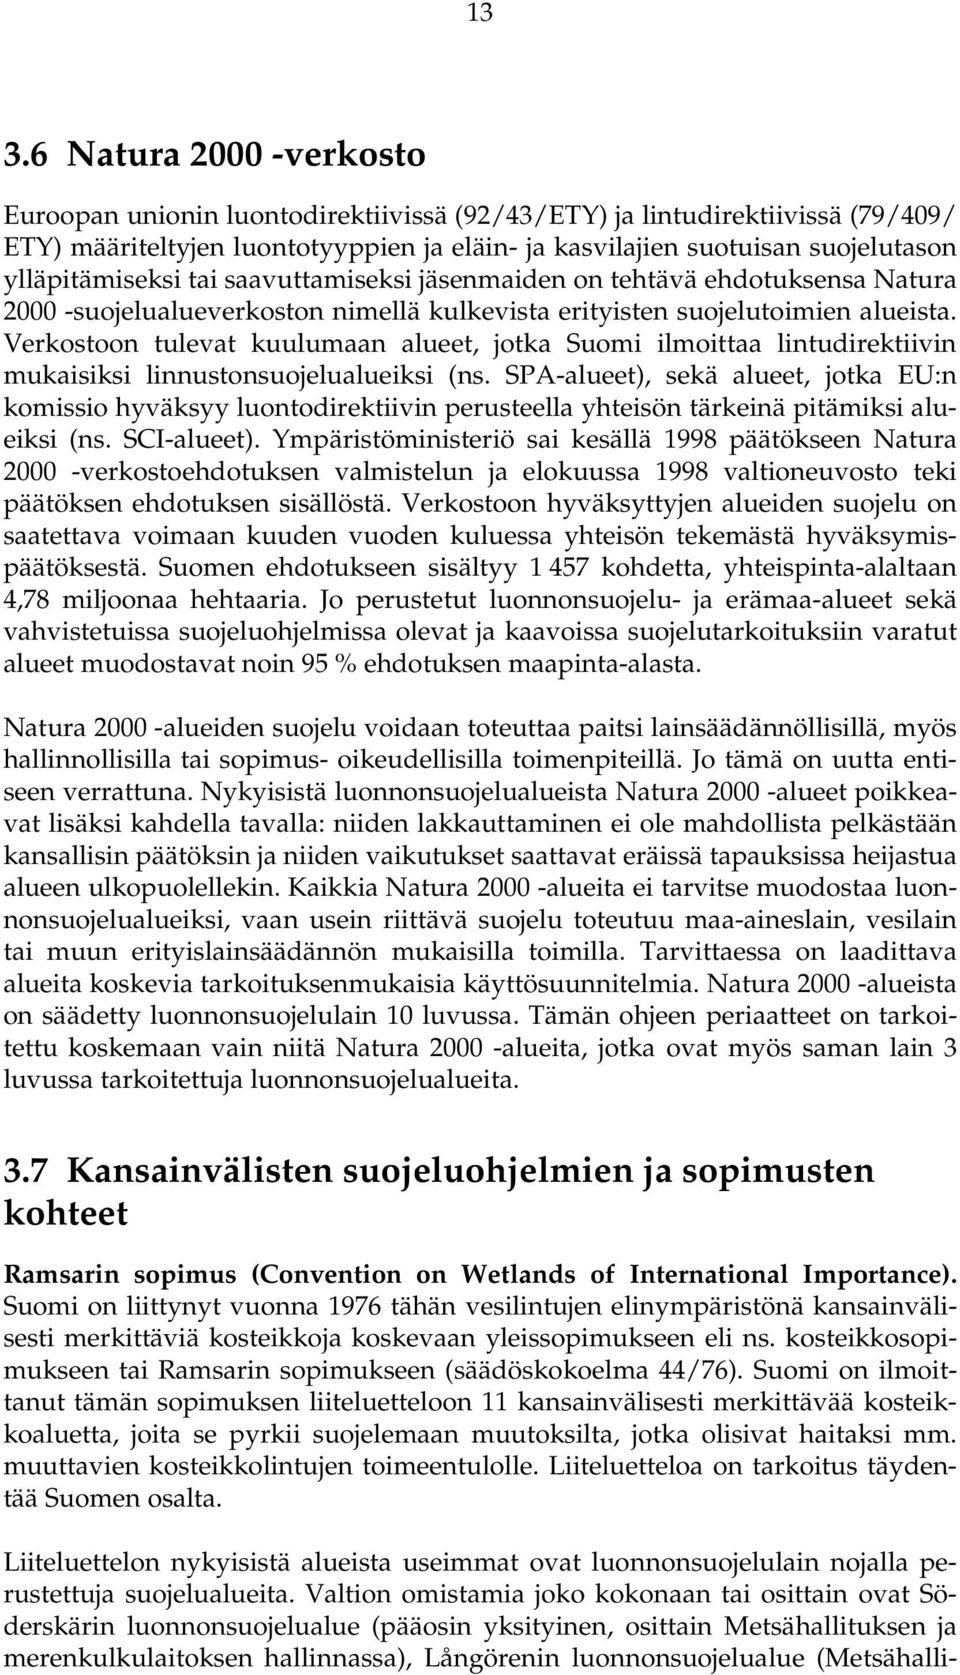 Verkostoon tulevat kuulumaan alueet, jotka Suomi ilmoittaa lintudirektiivin mukaisiksi linnustonsuojelualueiksi (ns.